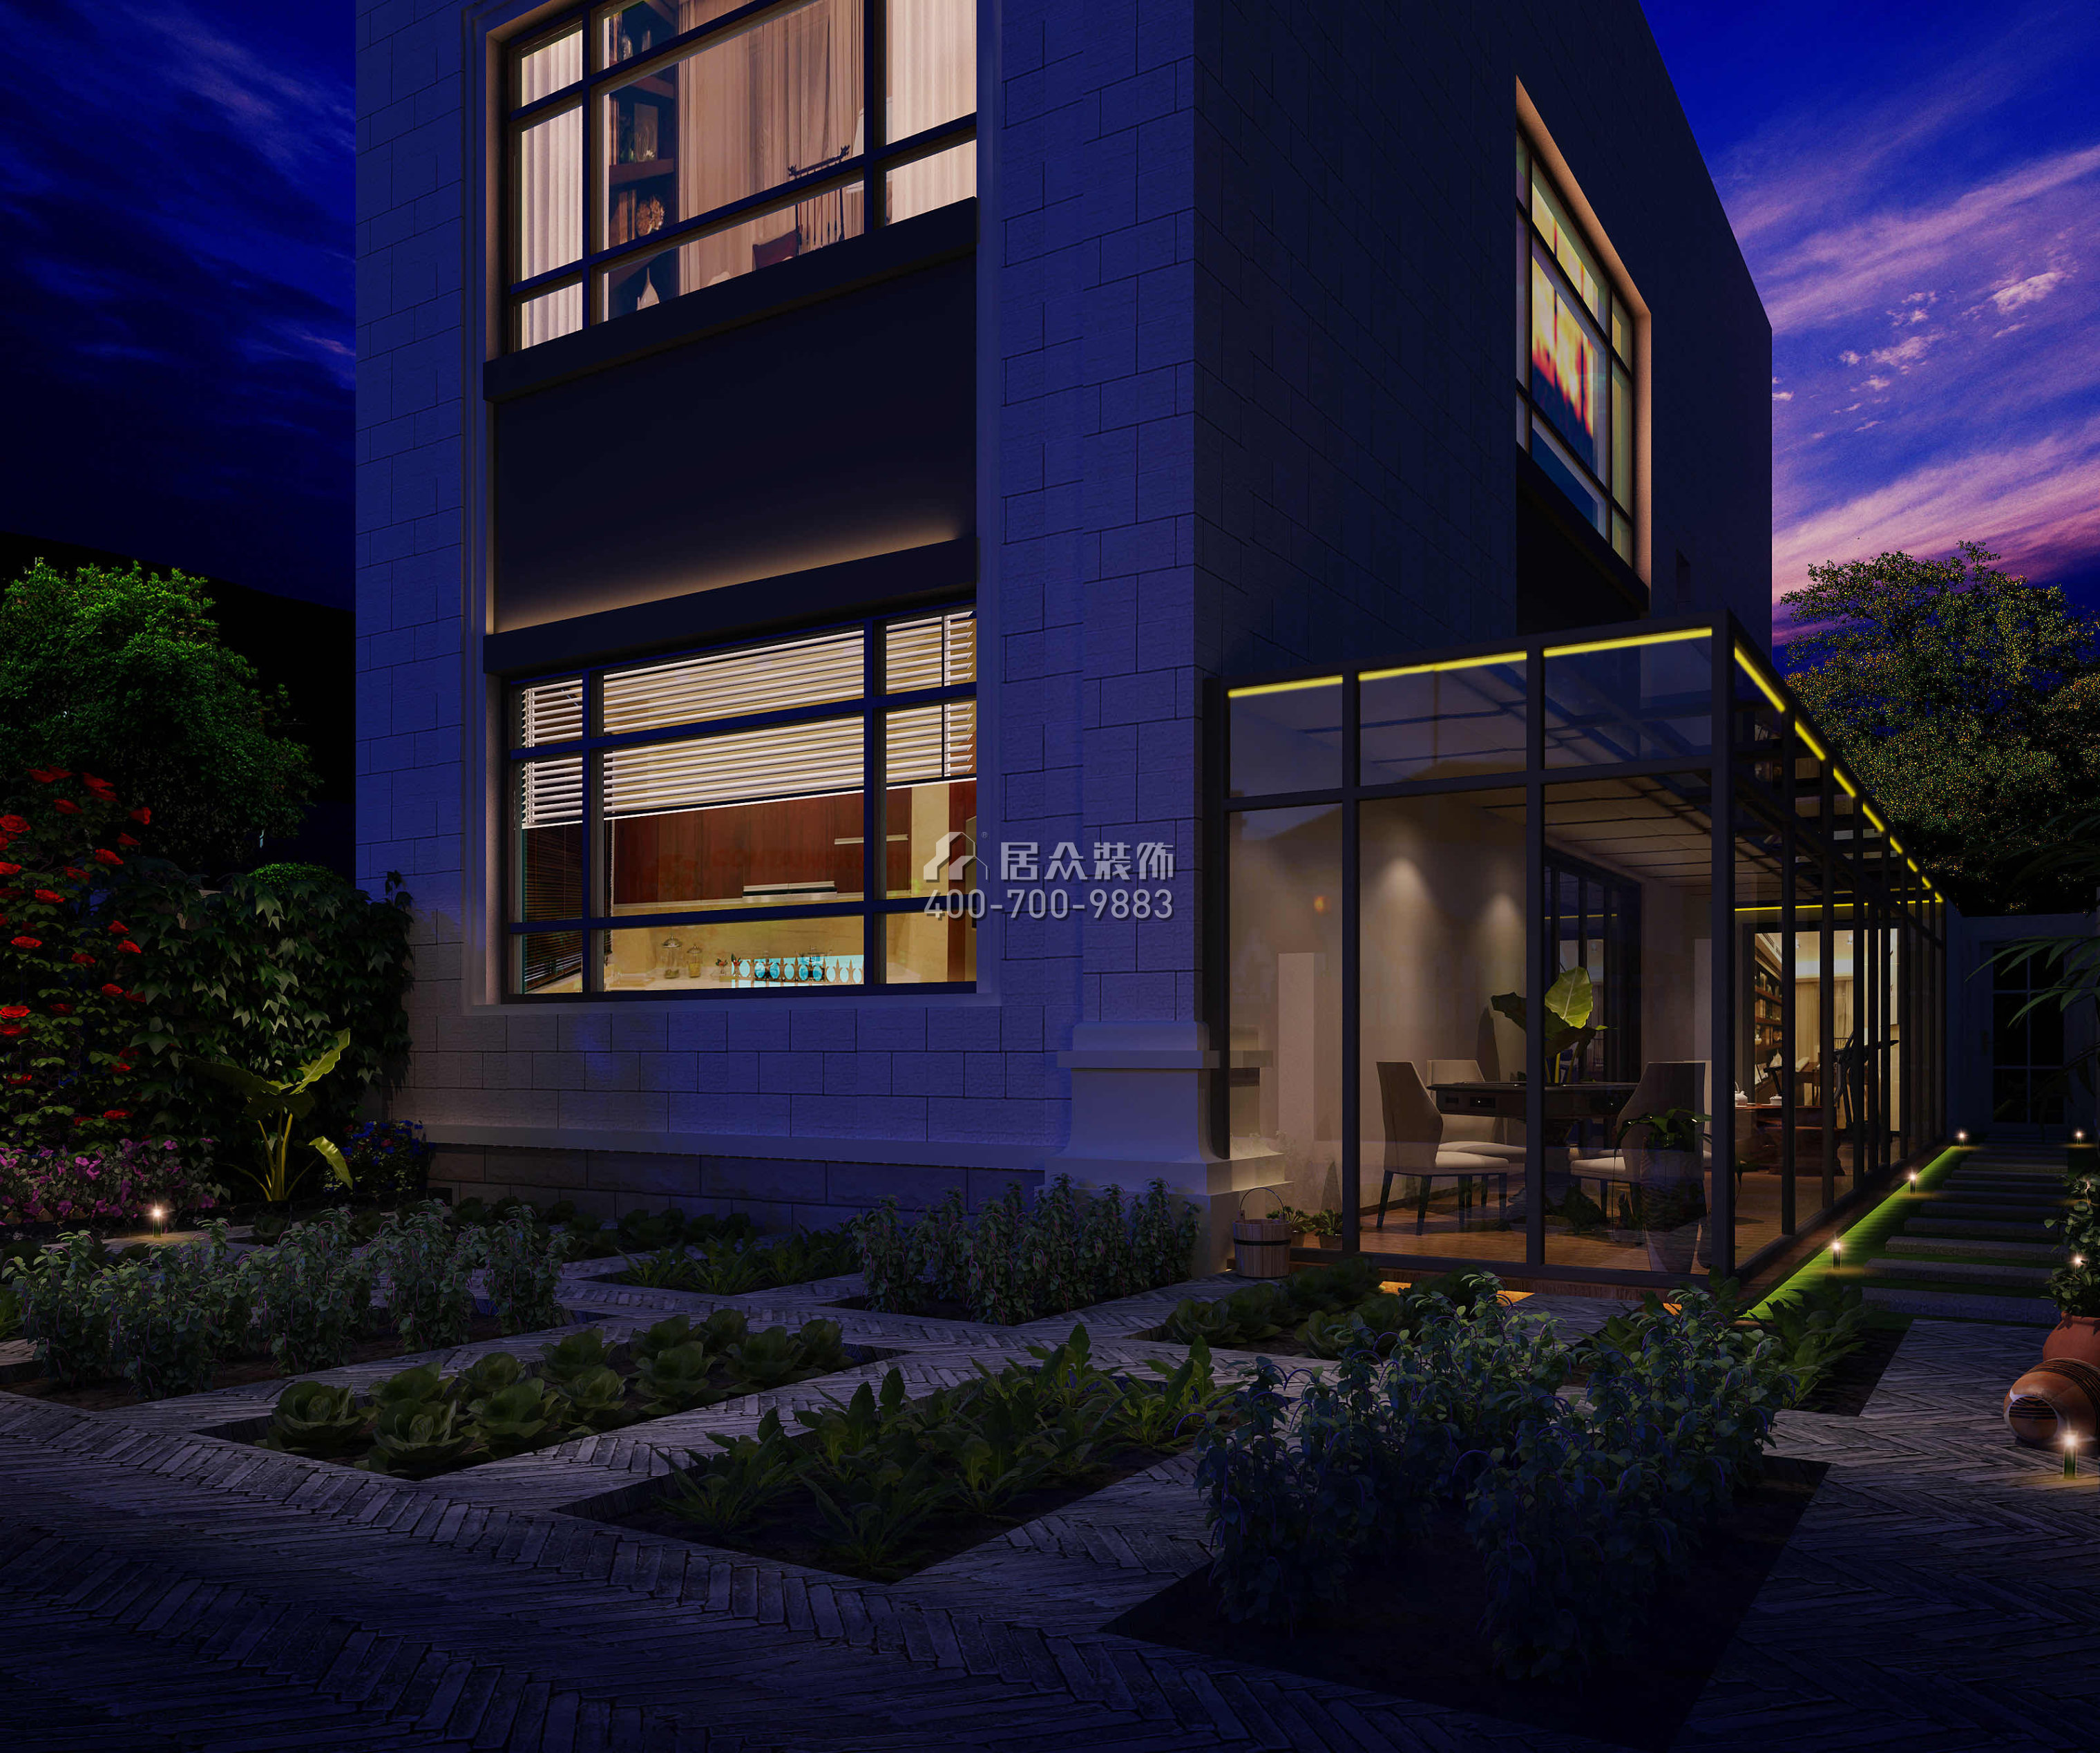 中信紅樹山330平方米現代簡約風格別墅戶型庭院裝修效果圖